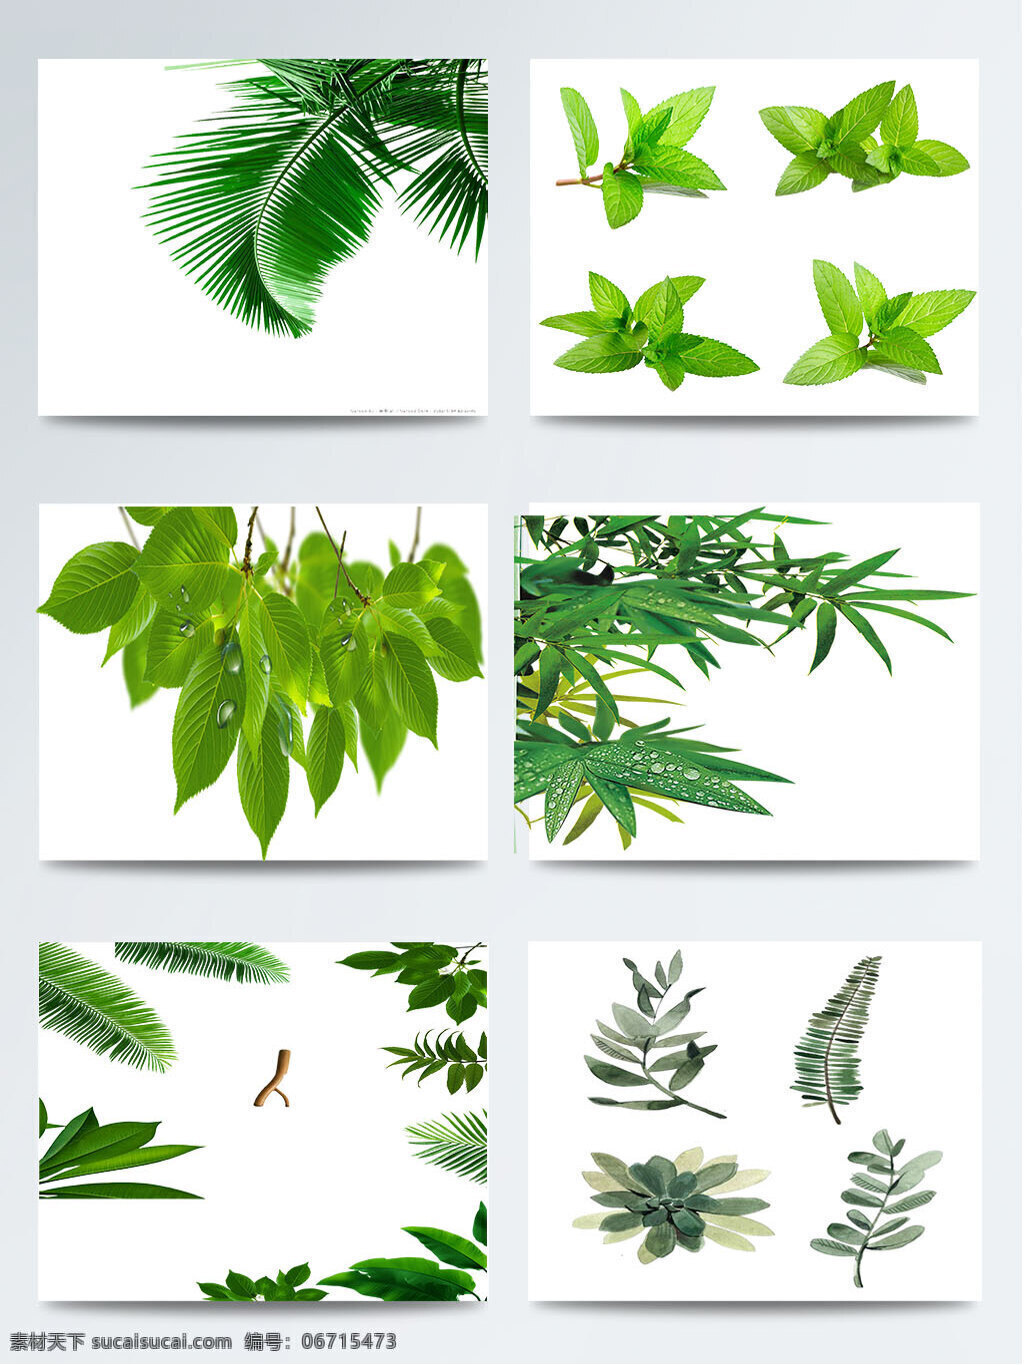 二十四节气 立春 绿叶 图案 元素 1节气 传统 立春节气 绿叶图案 绿叶元素 叶子图案